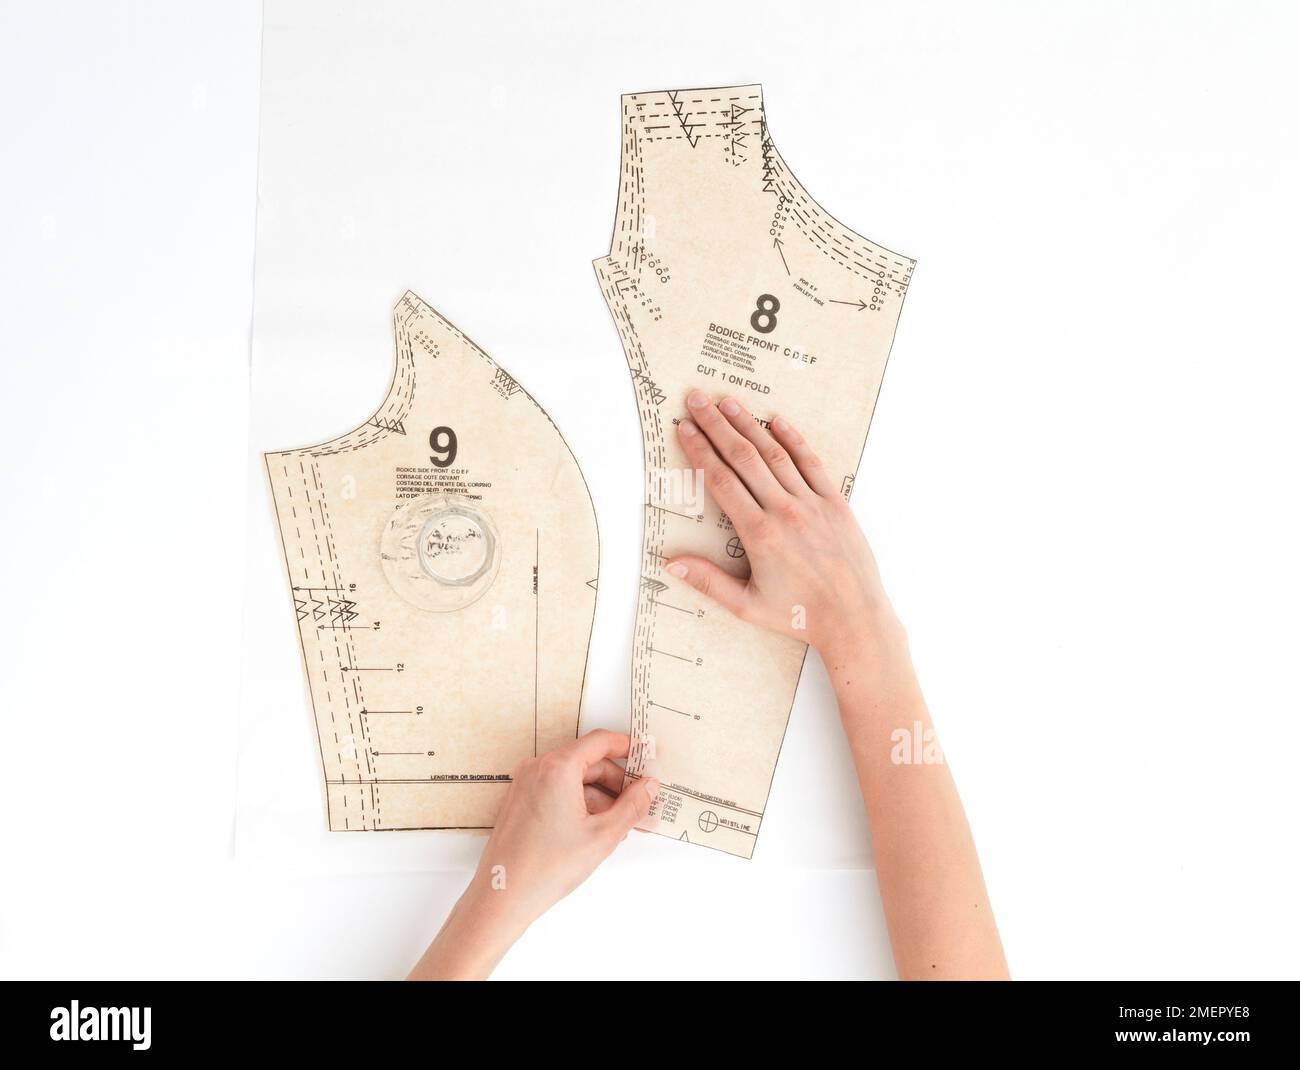 Frau, die das Dressmaking-Muster auf Papier positioniert, Blick von oben Stockfoto